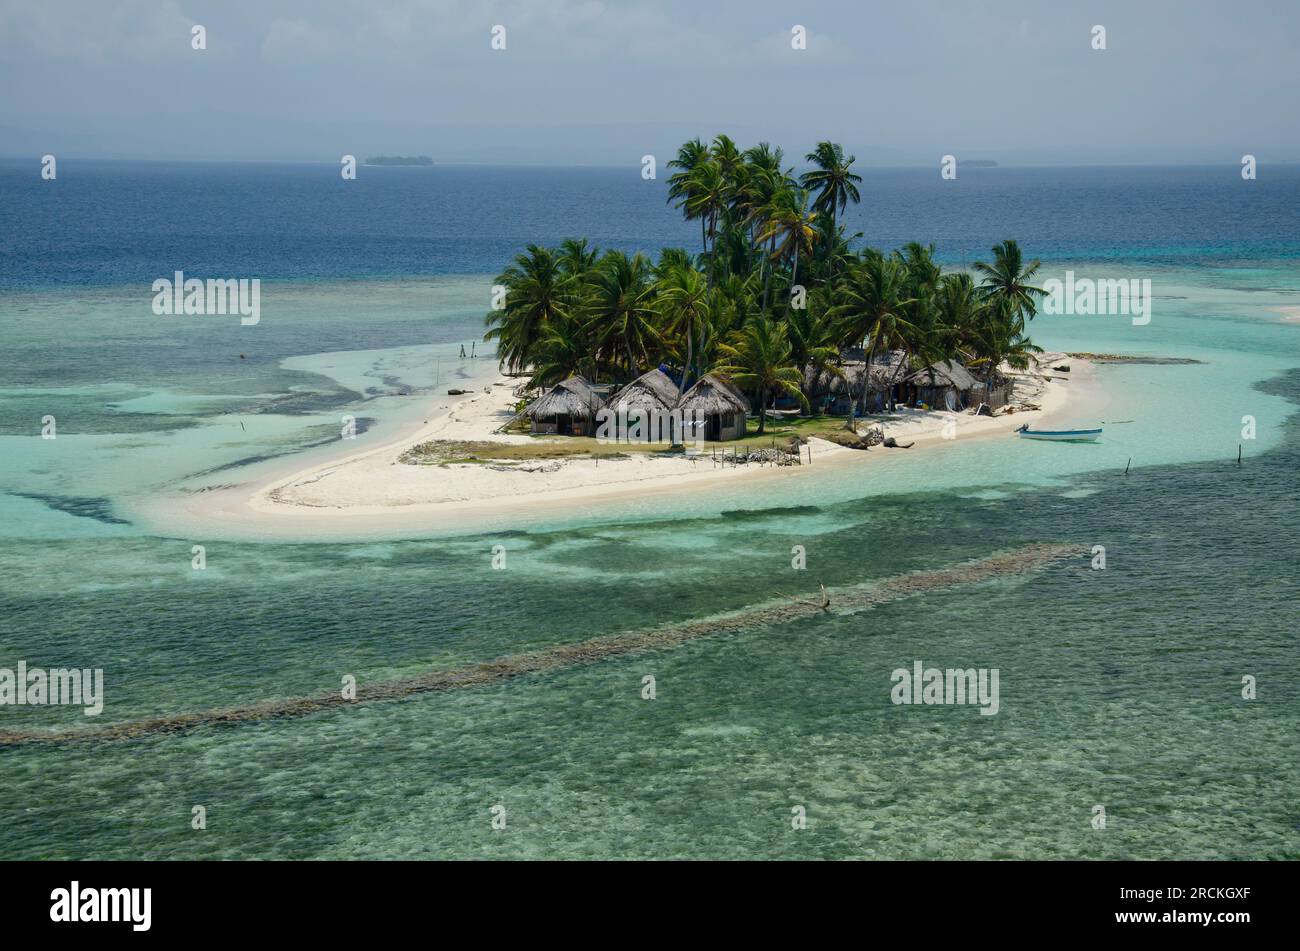 Vue aérienne d'une île tropicale, San Blas, Panama. - photo stock Banque D'Images